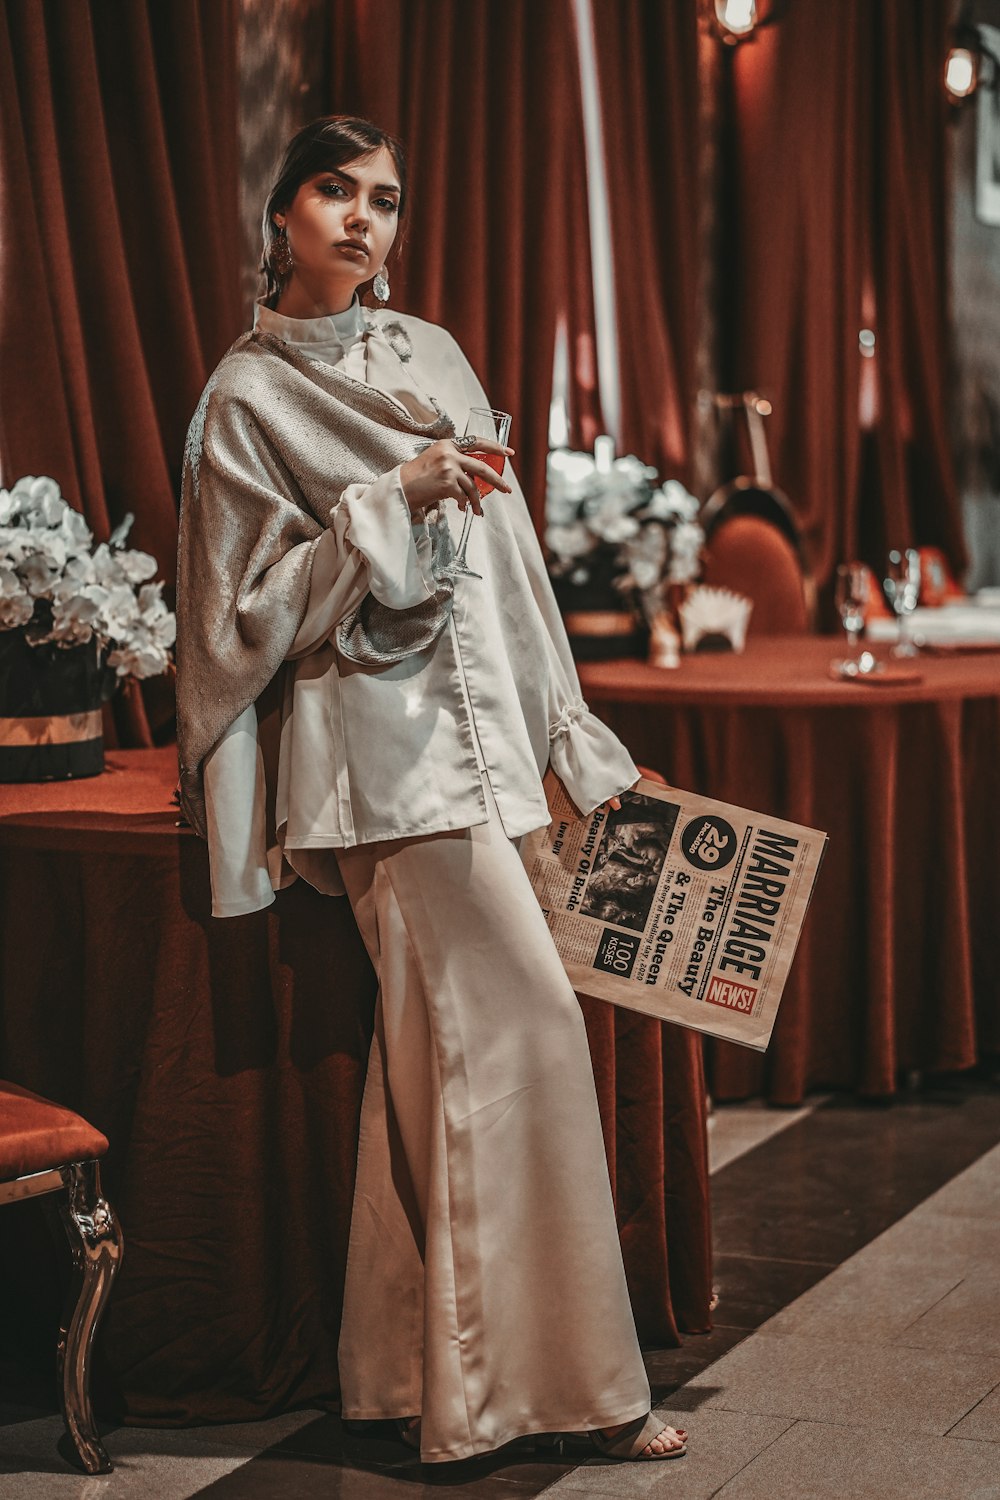 Frau in weißer Robe mit schwarz-weißer Karte